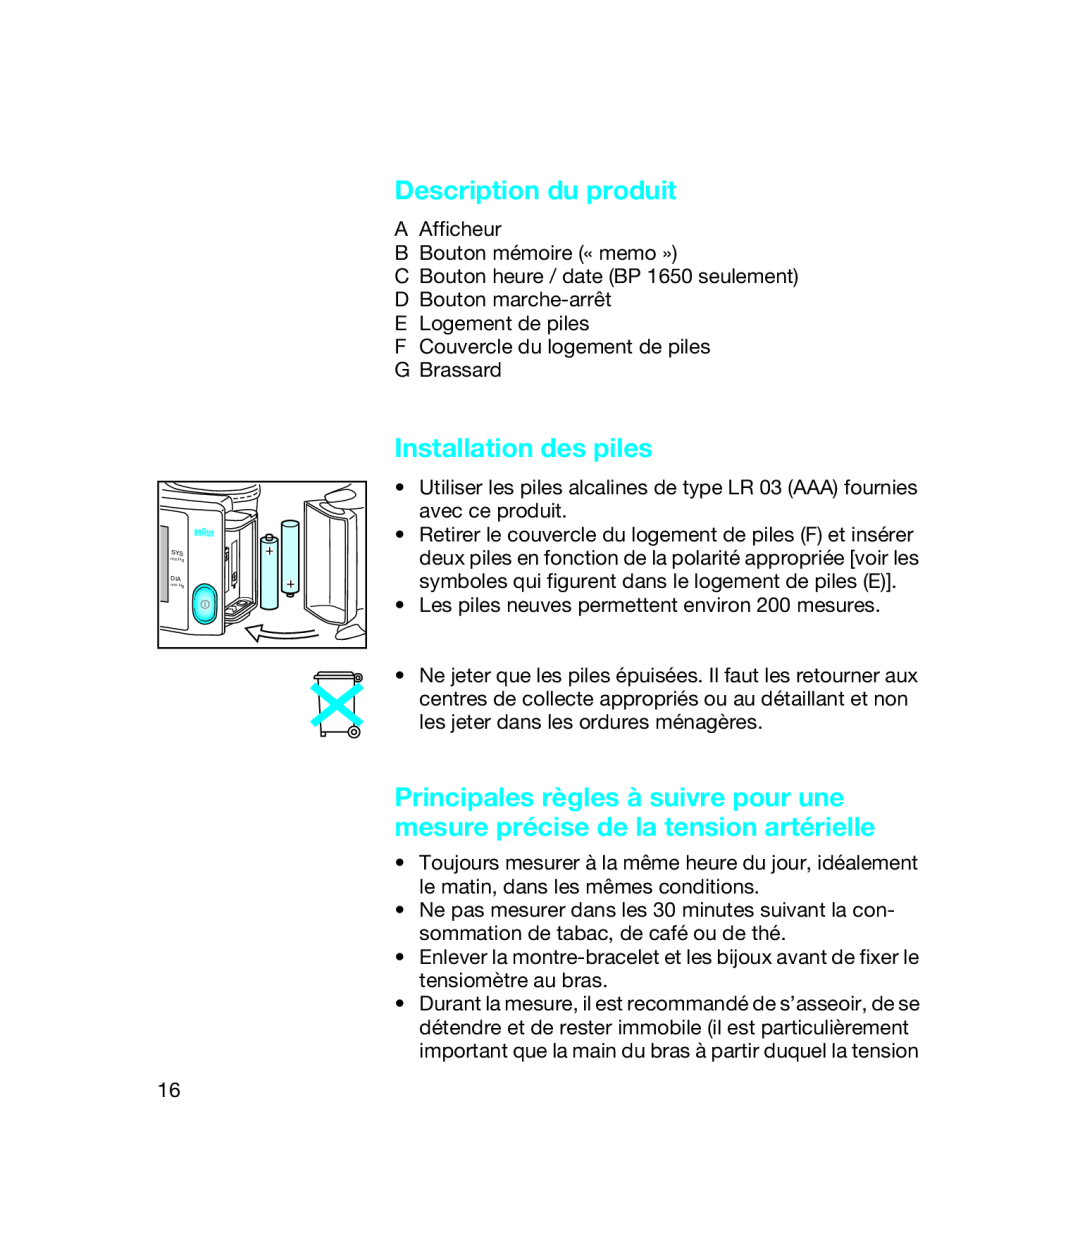 Braun bp1600, BP 1650 manual Description du produit, Installation des piles 